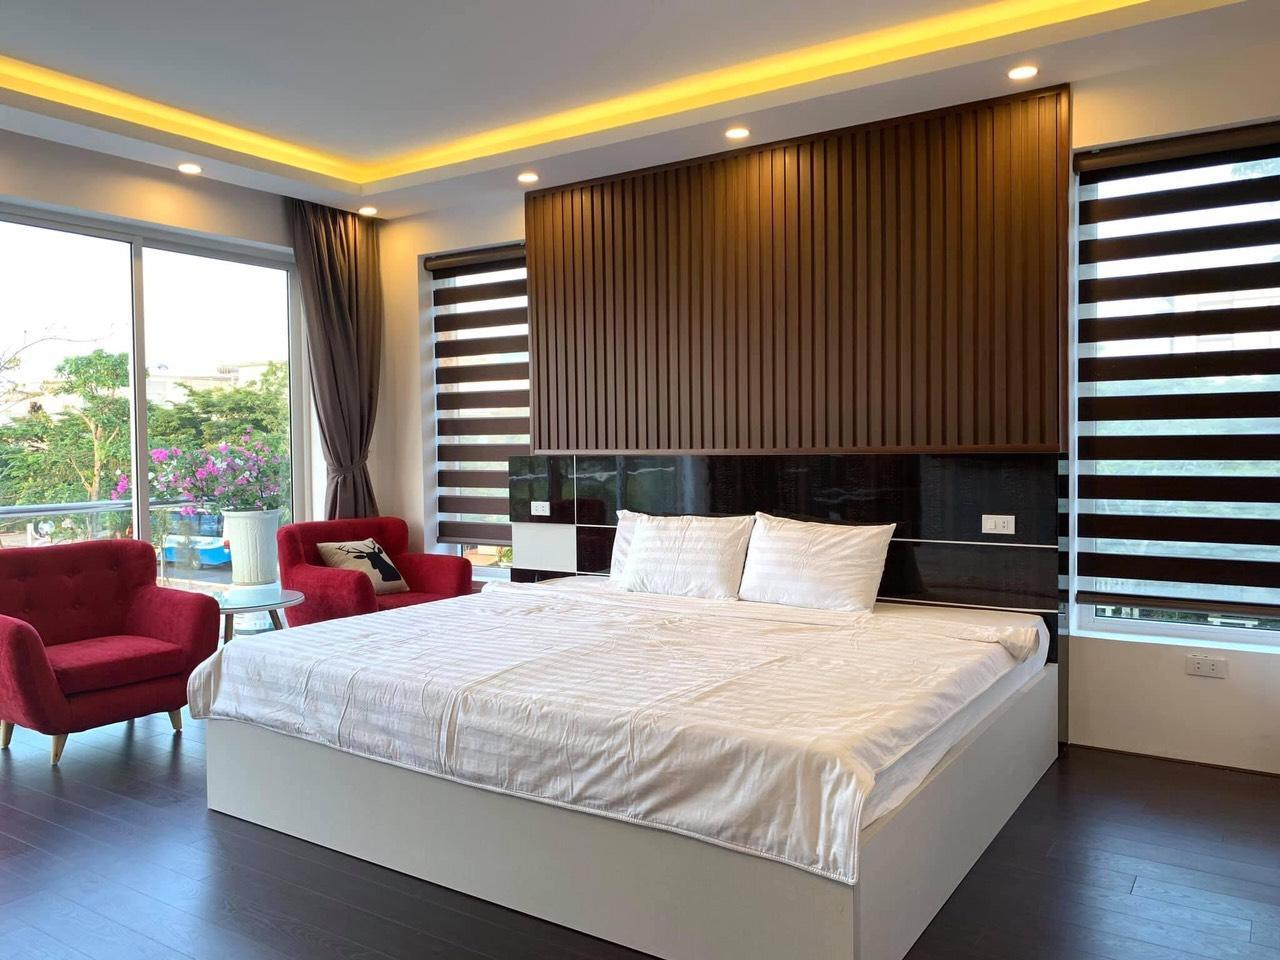 Bedroom 3, Biệt thự Thanh Thanh 5 Phòng Ngủ FLC Sầm Sơn, Vũng Tàu